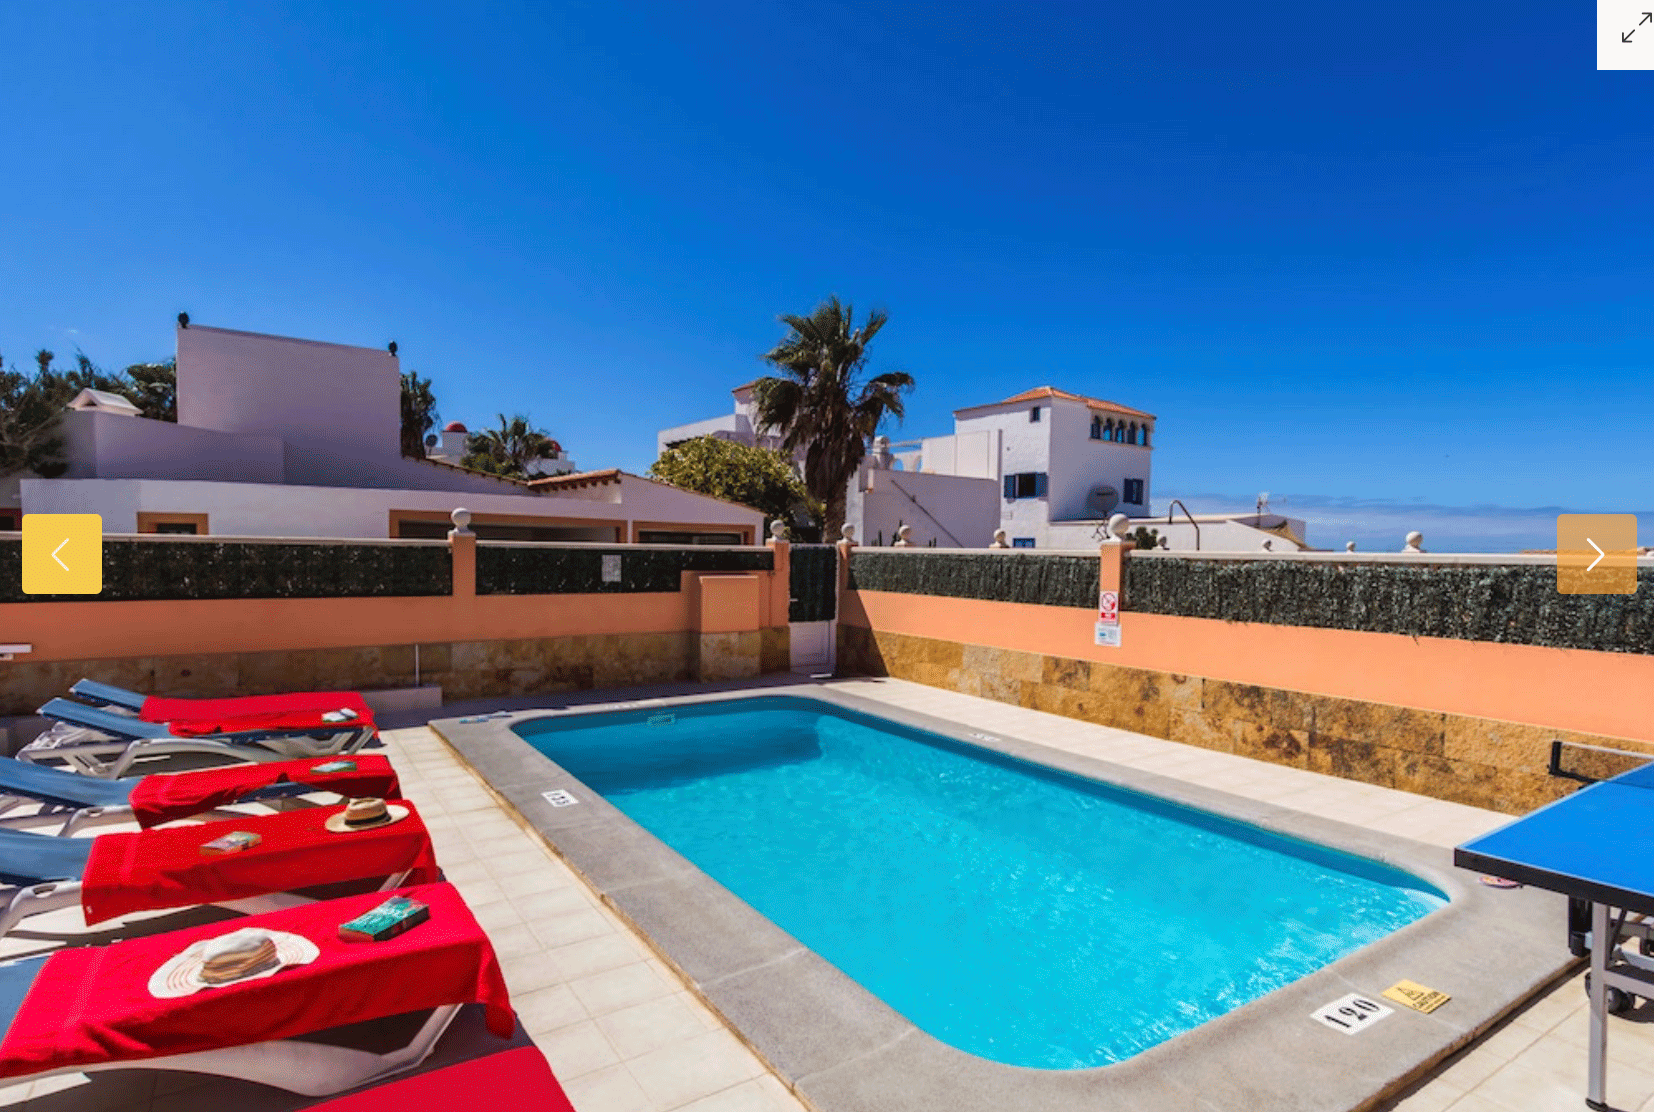 A vendre! Une fantastique villa en bord de mer avec piscine à Corralejo